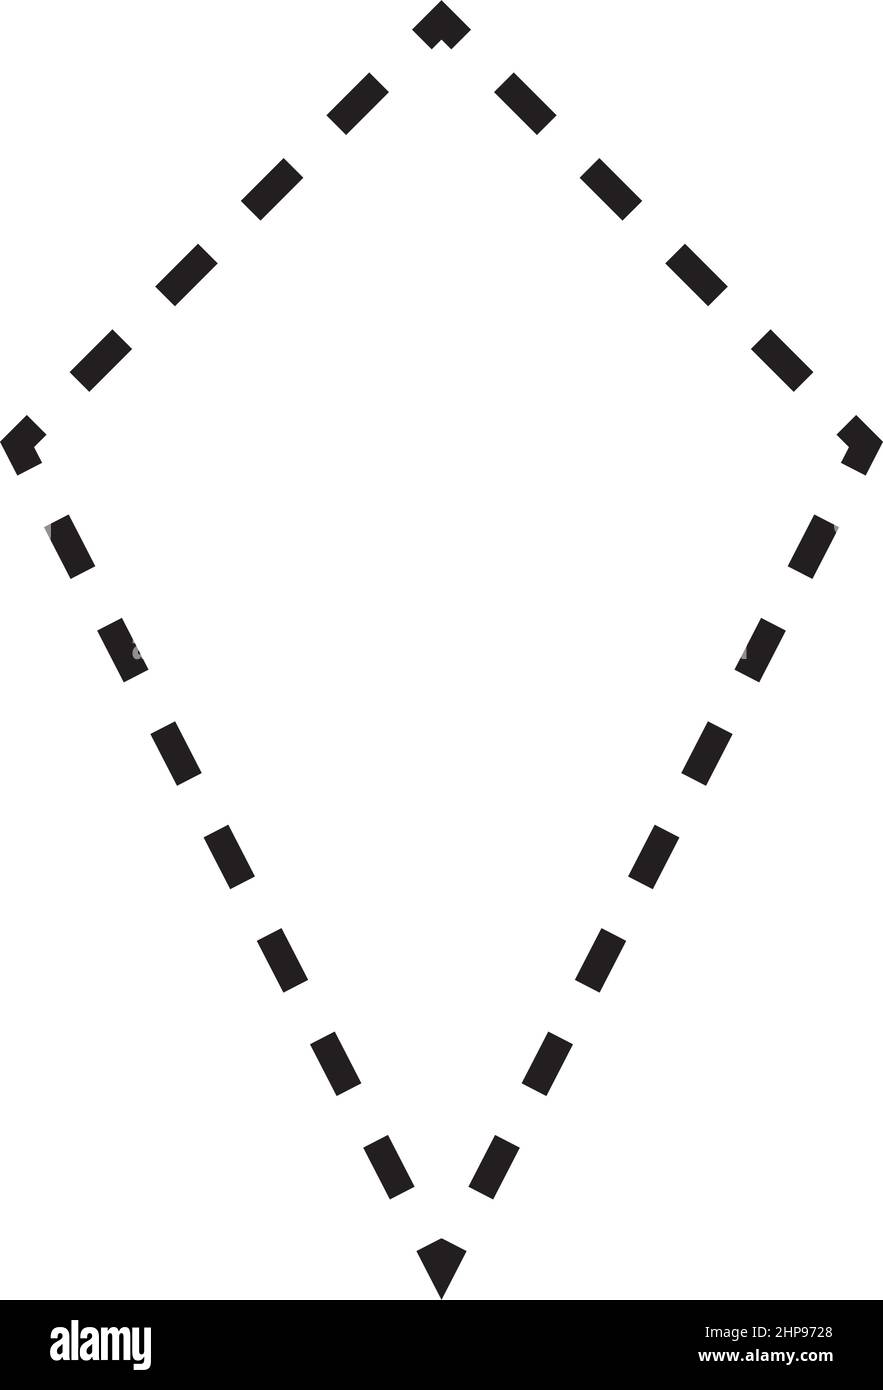 Drachen-Form gestrichelte Symbol Vektor-Symbol für kreative Grafik-Design-ui-Element in einem Piktogramm Illustration Stock Vektor